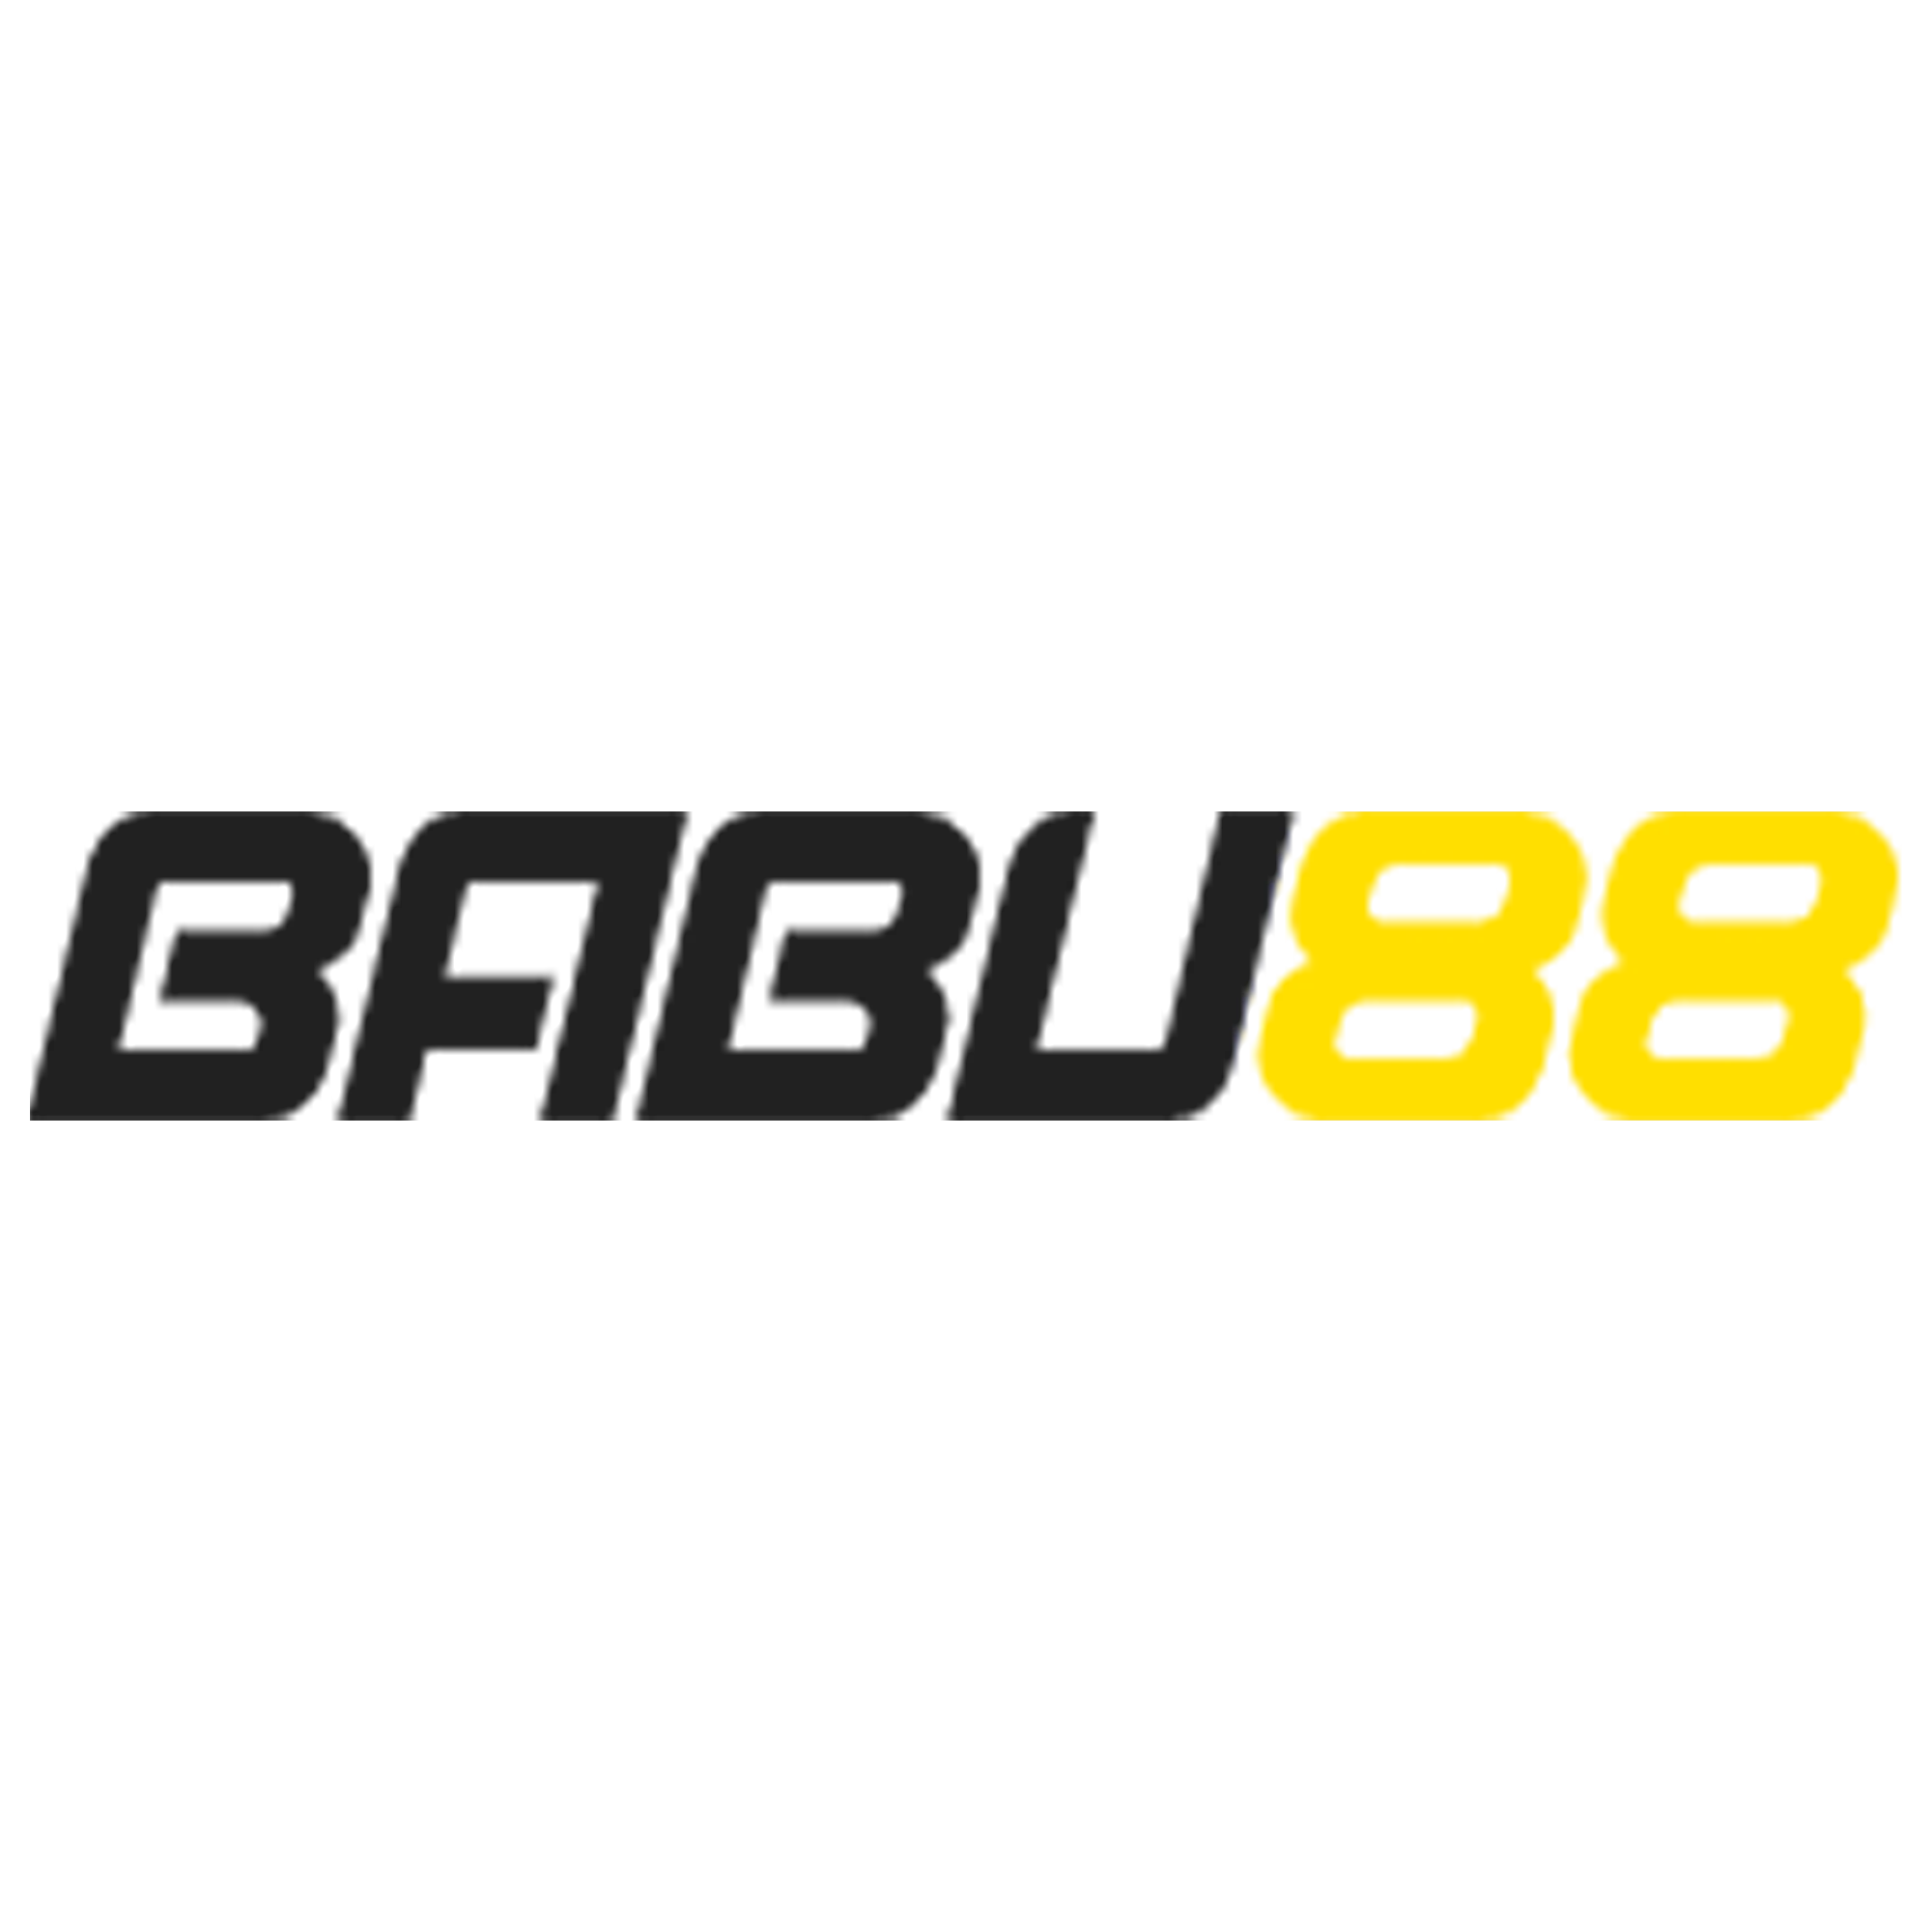 Babu88 App